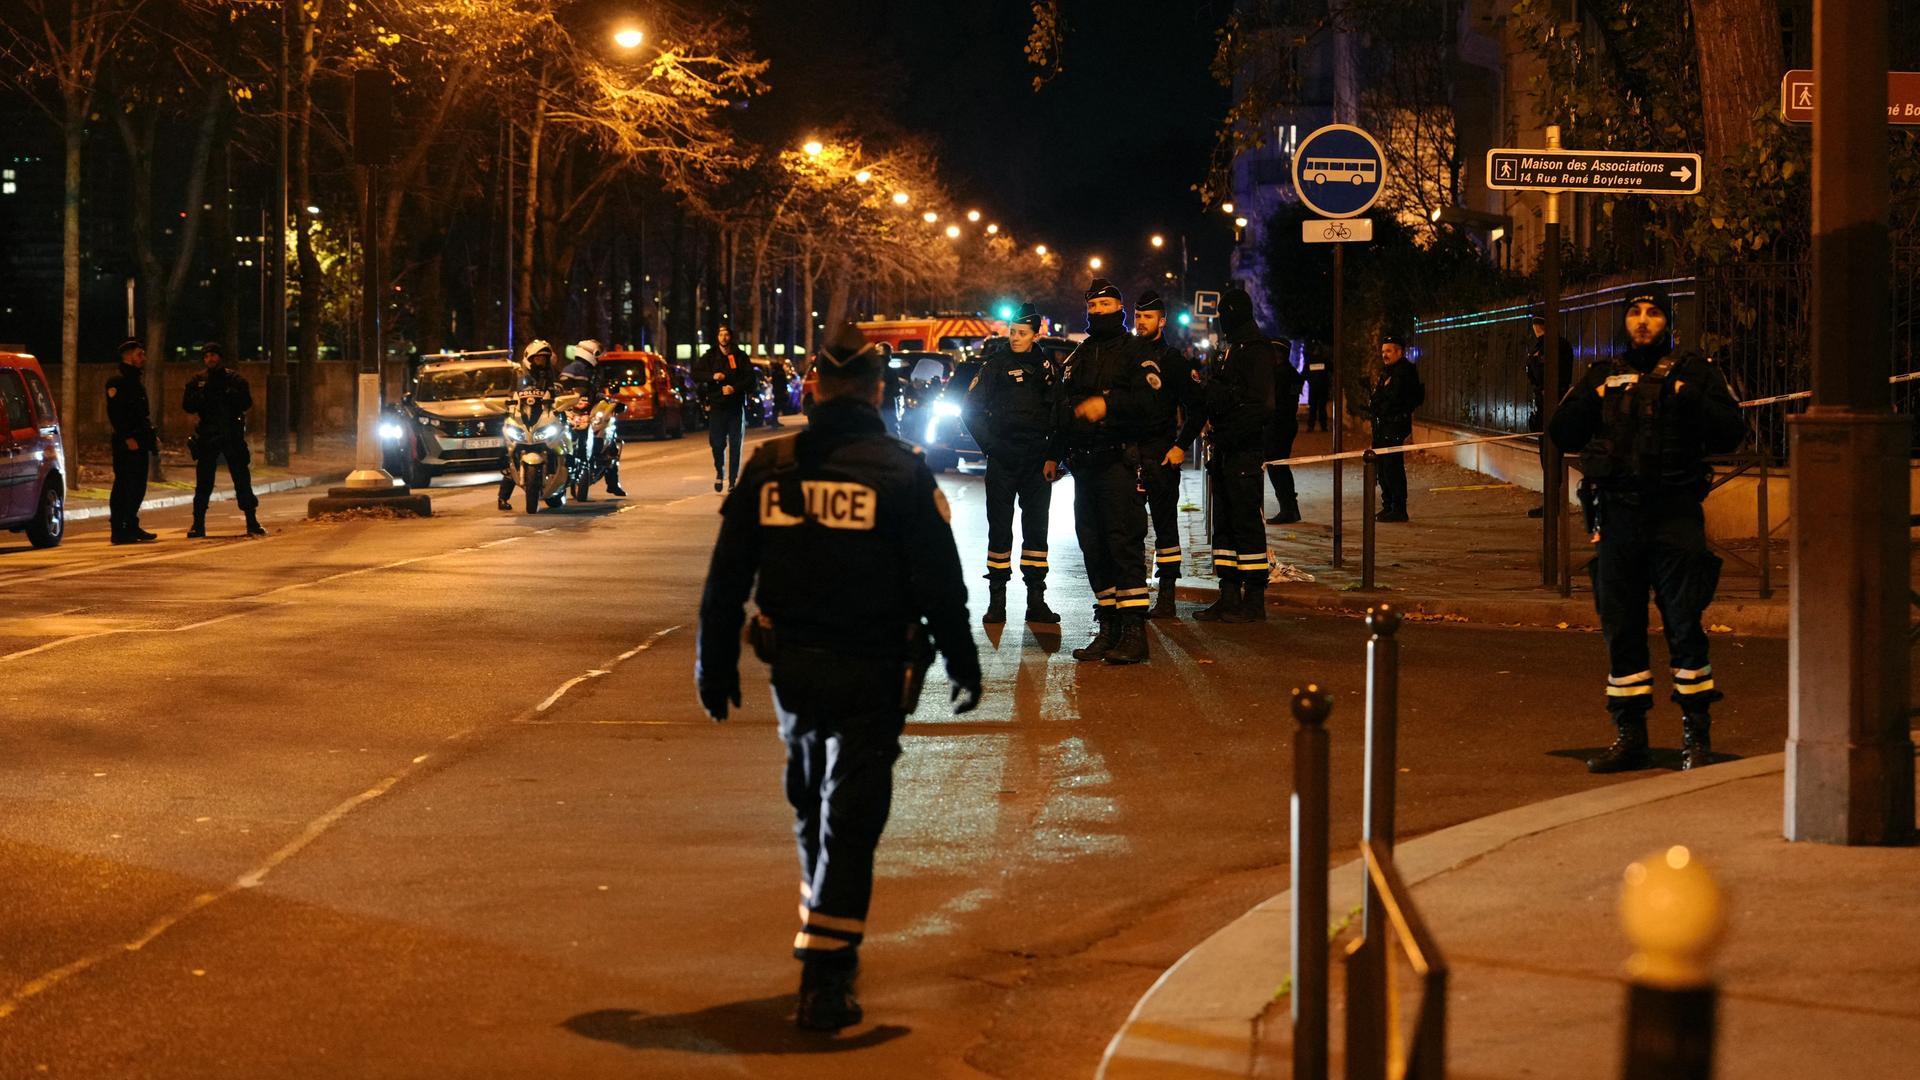 Frankreich - Innenminister: Deutscher bei Messerattacke in Paris getötet, zwei weitere Touristen verletzt - Macron spricht Beileid aus